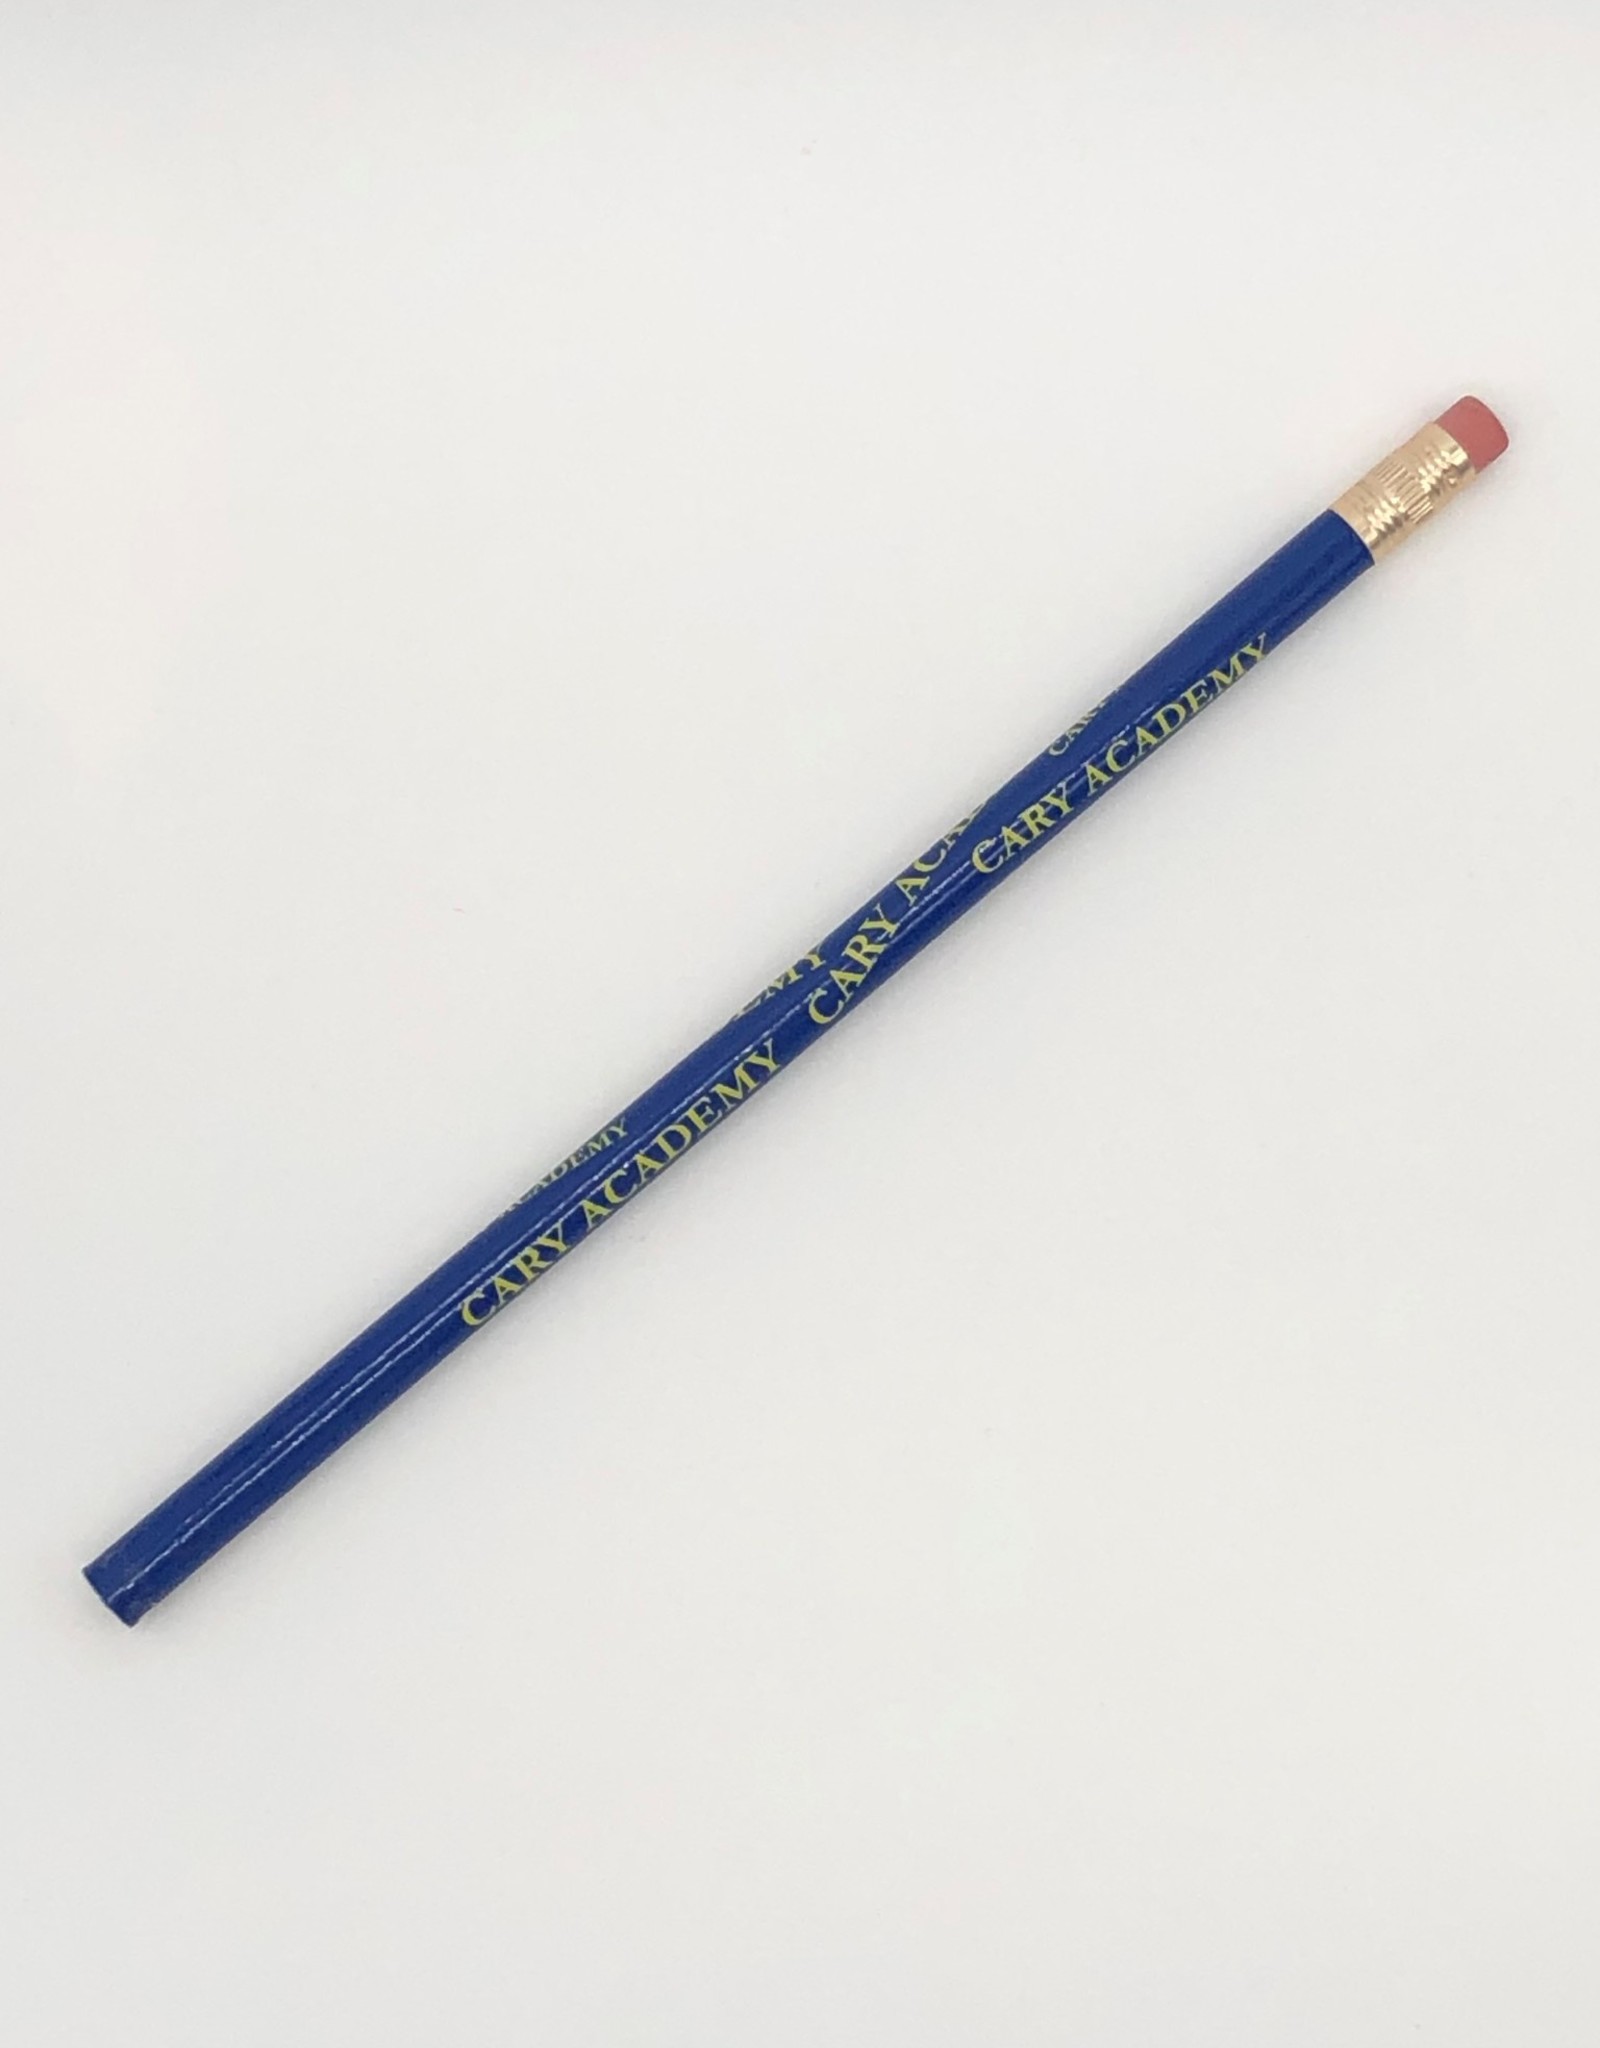 Cary Academy Pencil